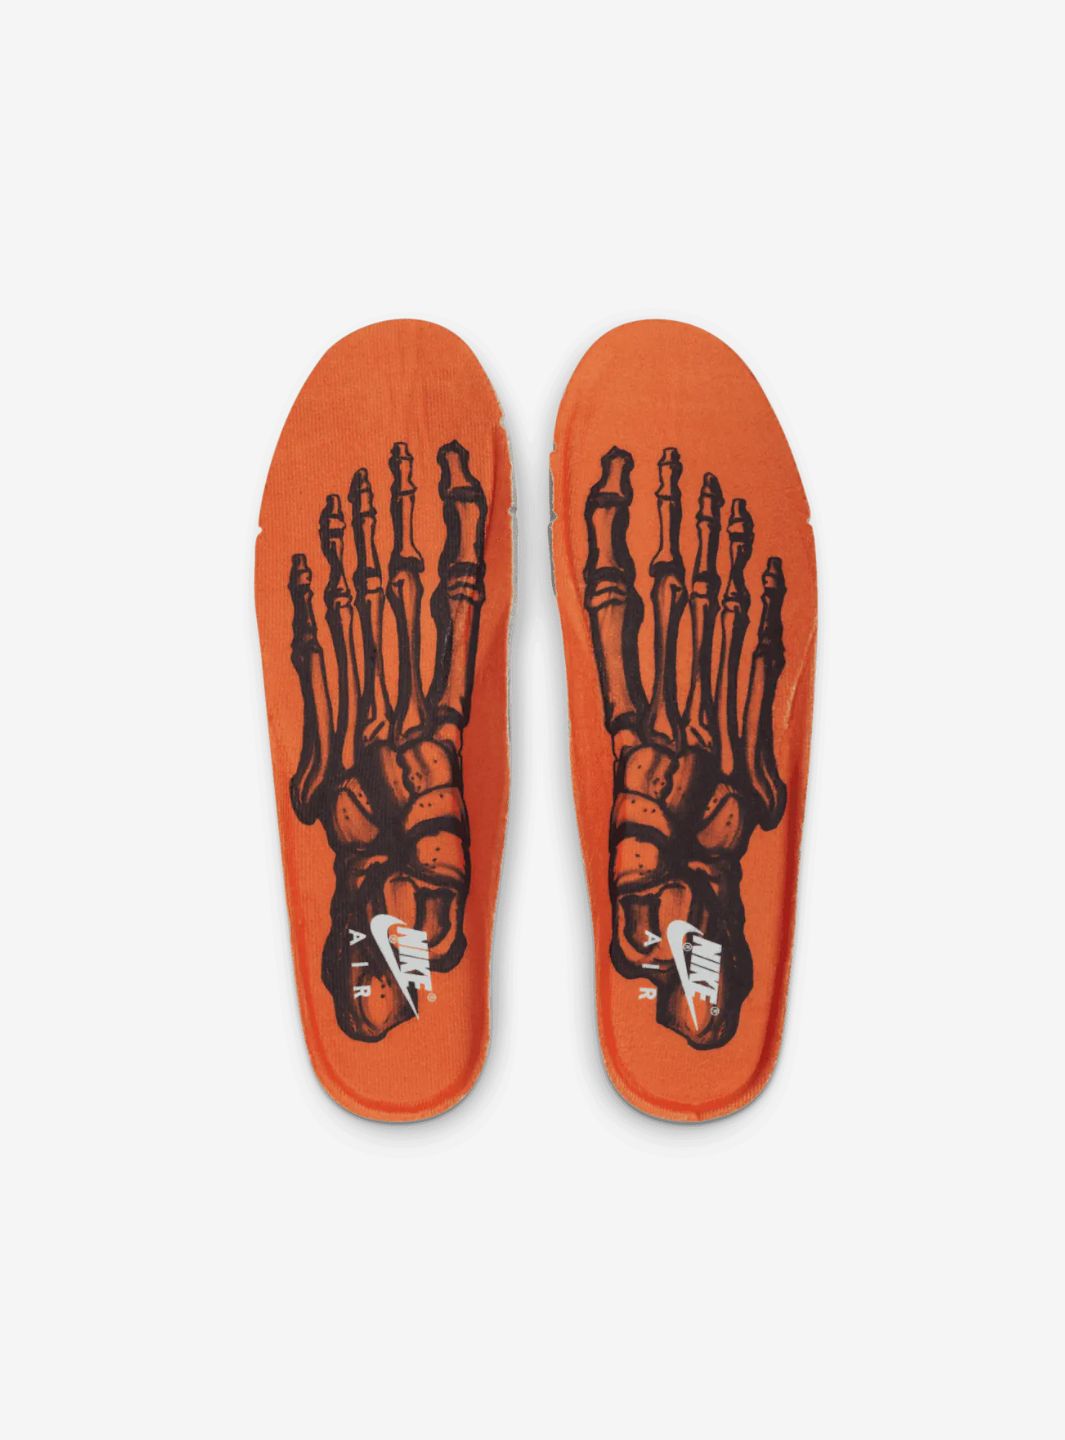 Nike Air Force 1 Low Orange Skeleton Halloween (2020) - CU8067-800 | ResellZone